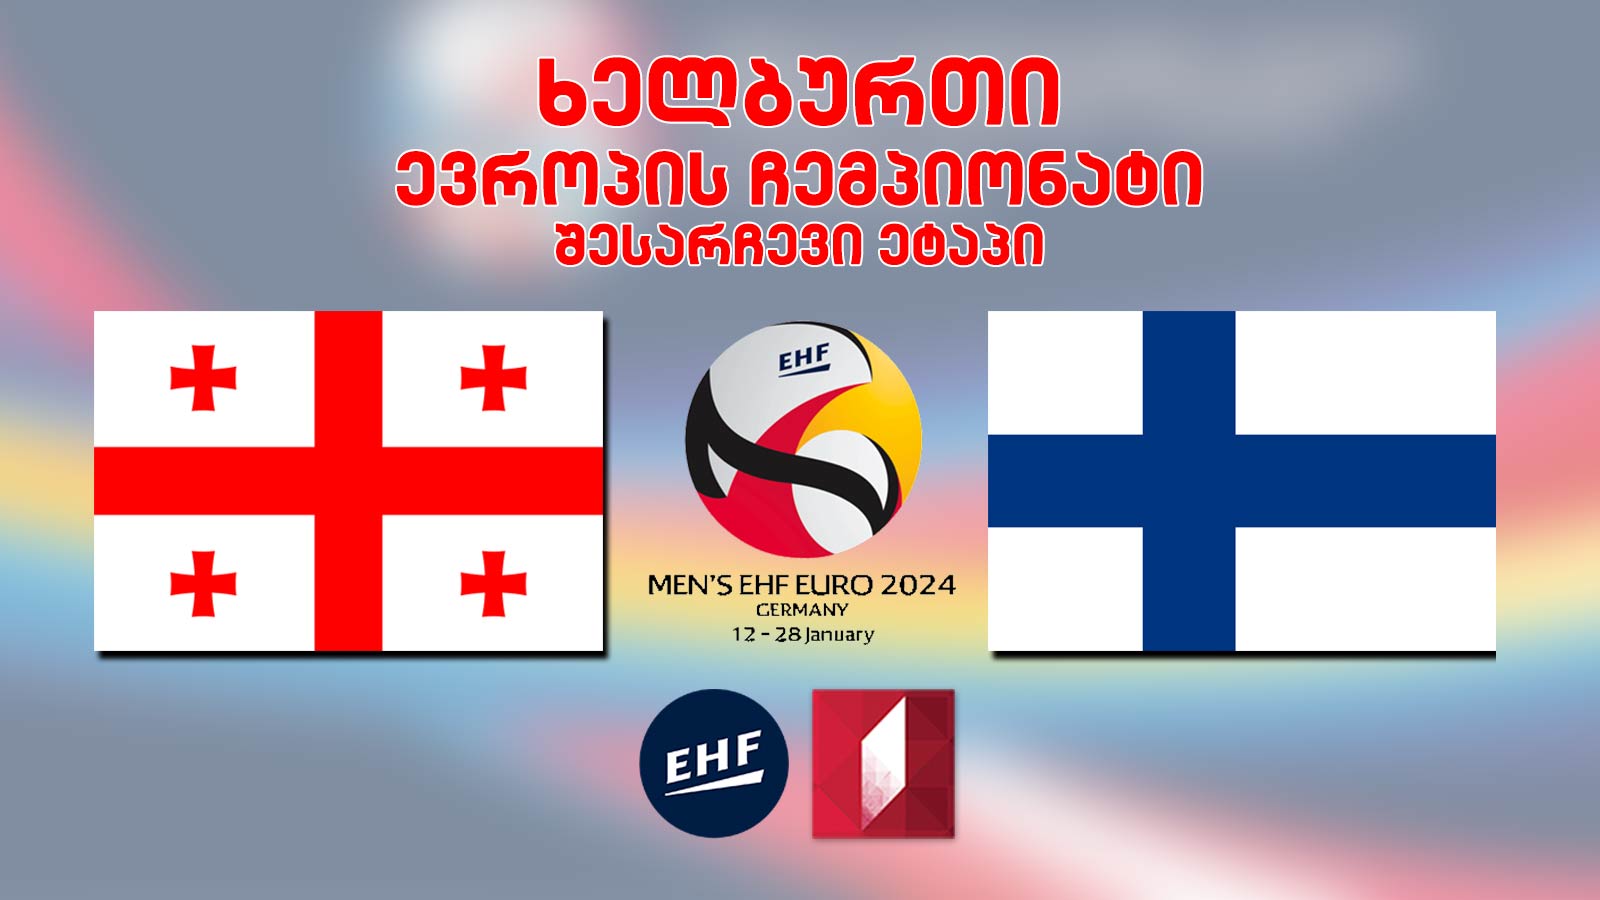 #ხელბურთი საქართველო - ფინეთი #Handball Georgia vs Finland #LIVE EURO2024 შესარჩევი ეტაპი